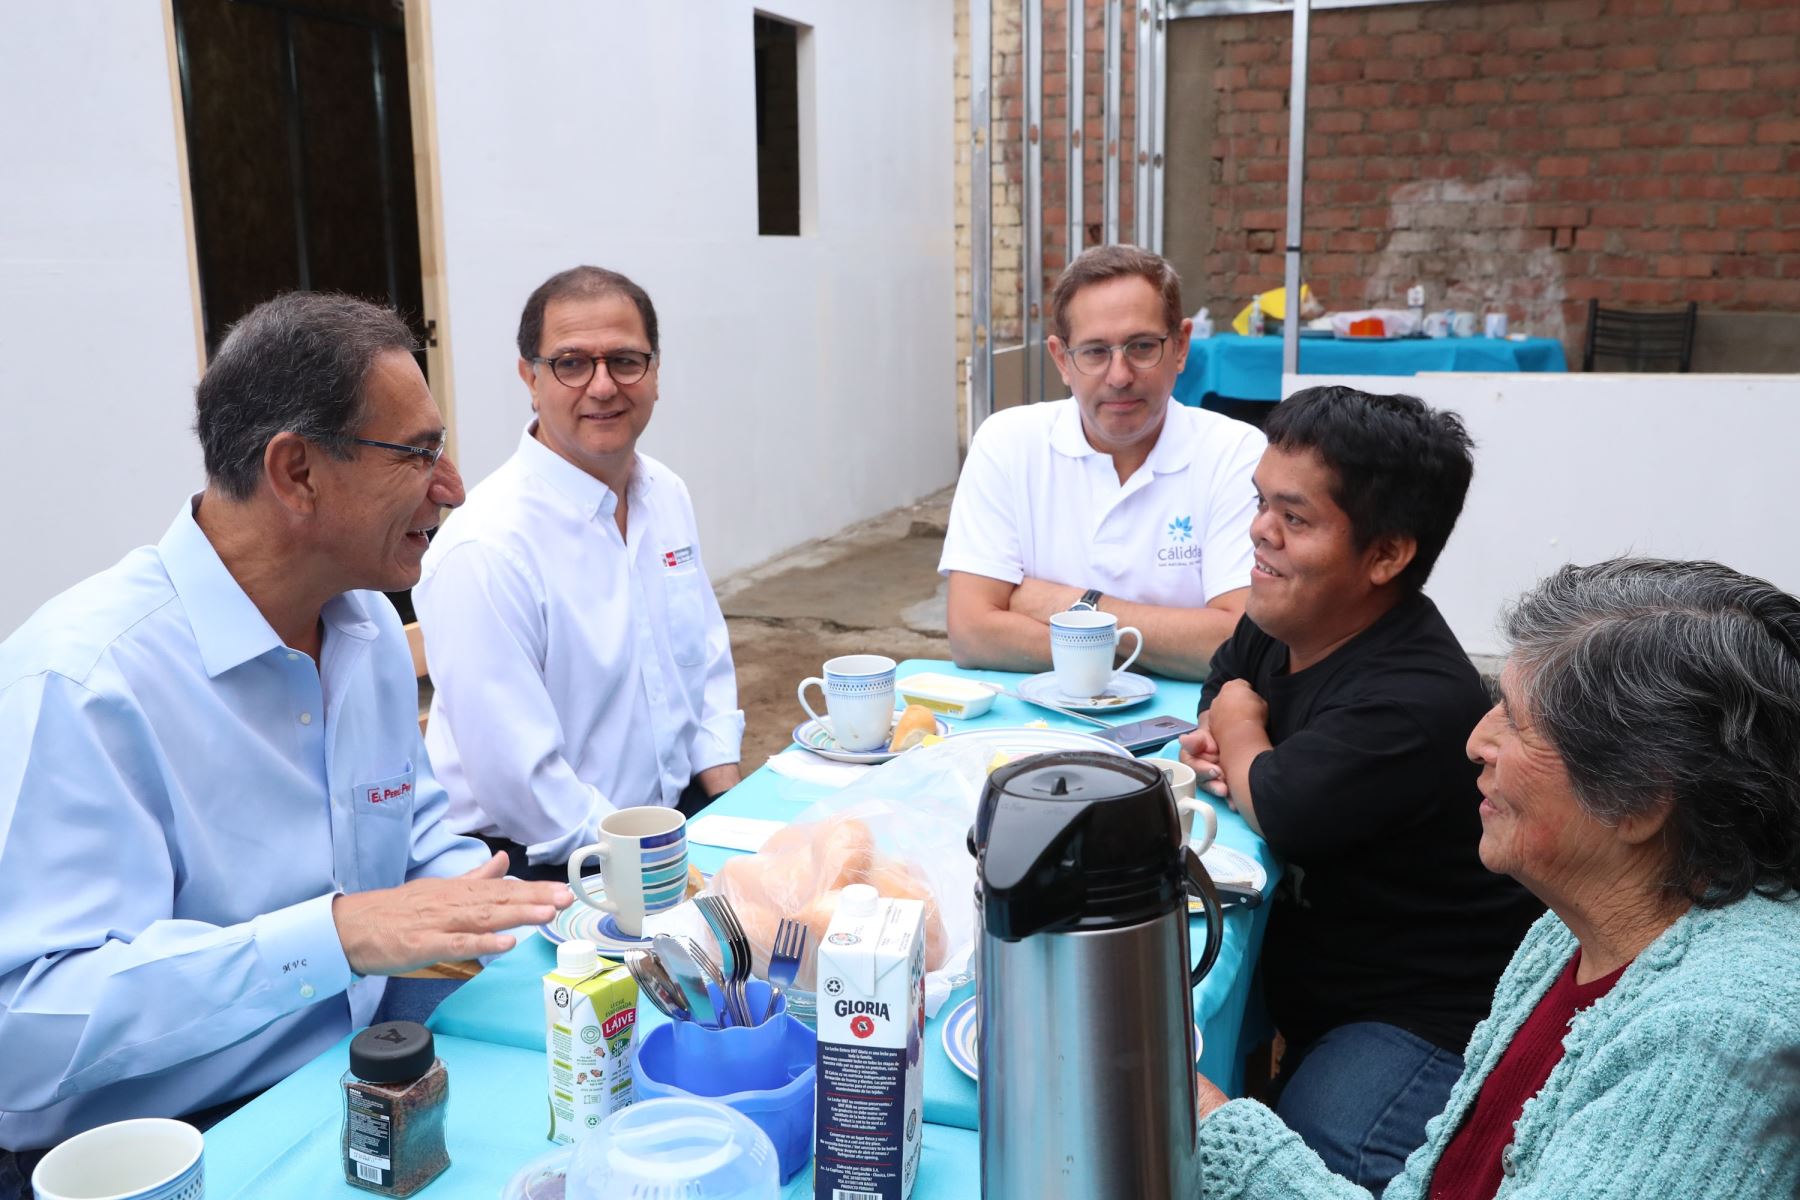 Gas natural llega a los distritos de Mi Perú y Ventanilla con la presencia del Presidente de la República, Martín Vizcarra, y el ministro de Energía y Minas, Francisco Ísmodes.